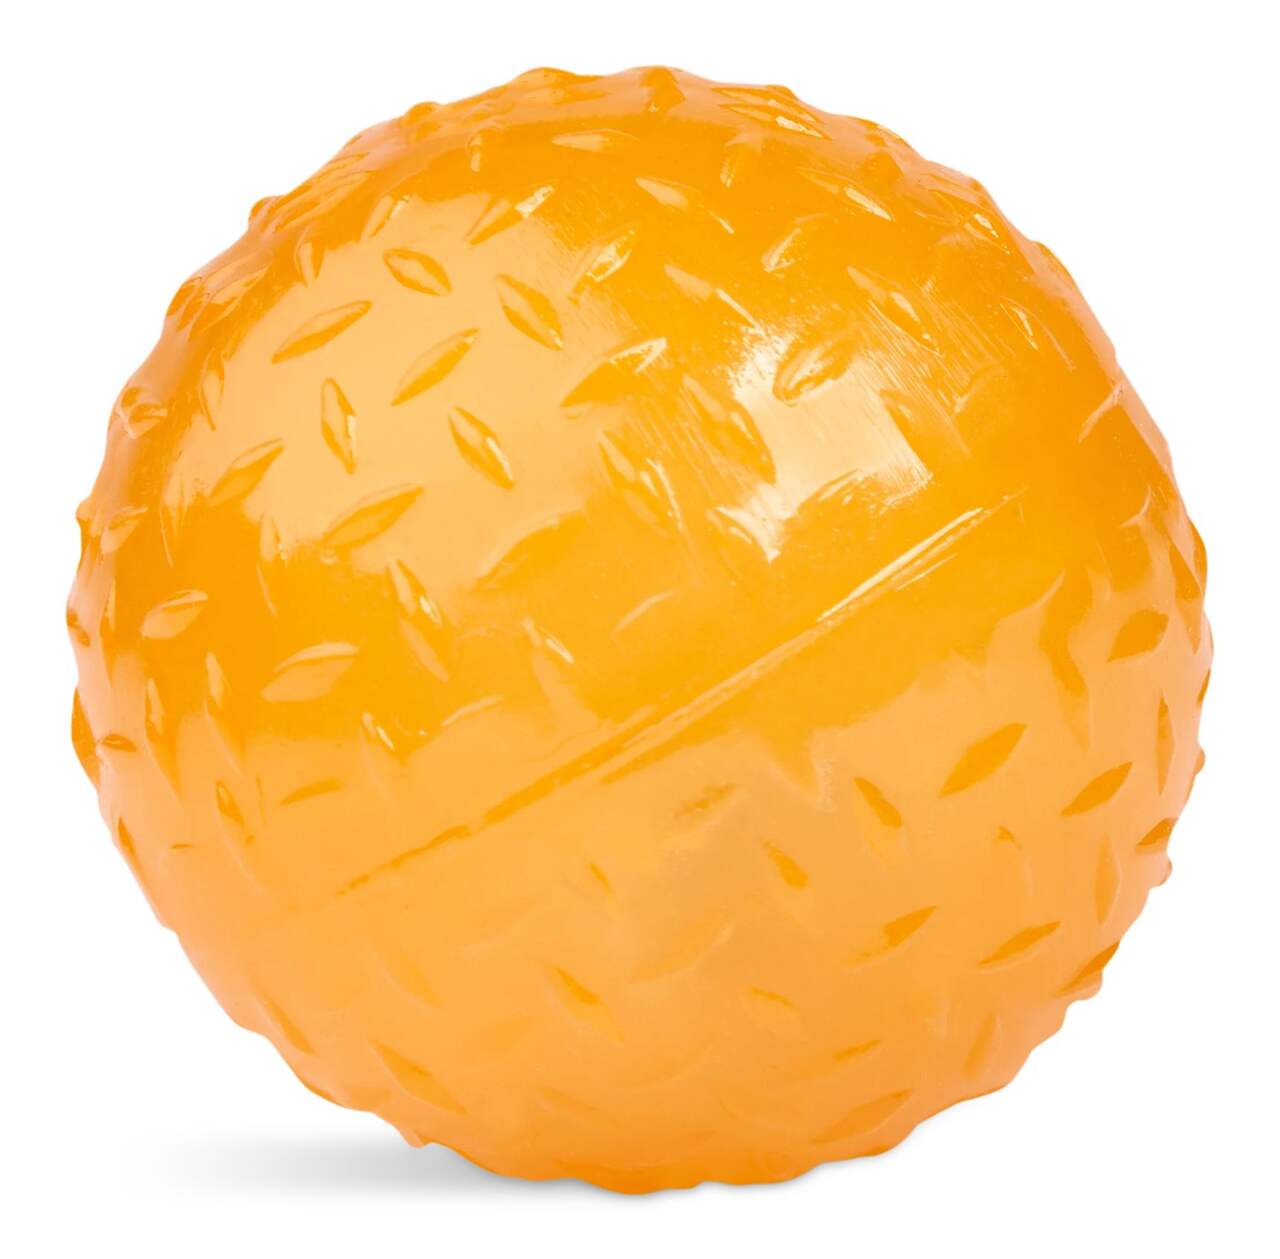 12 Balles mousse jaunes rebondissantes 40 mm pour jeux pas chères.